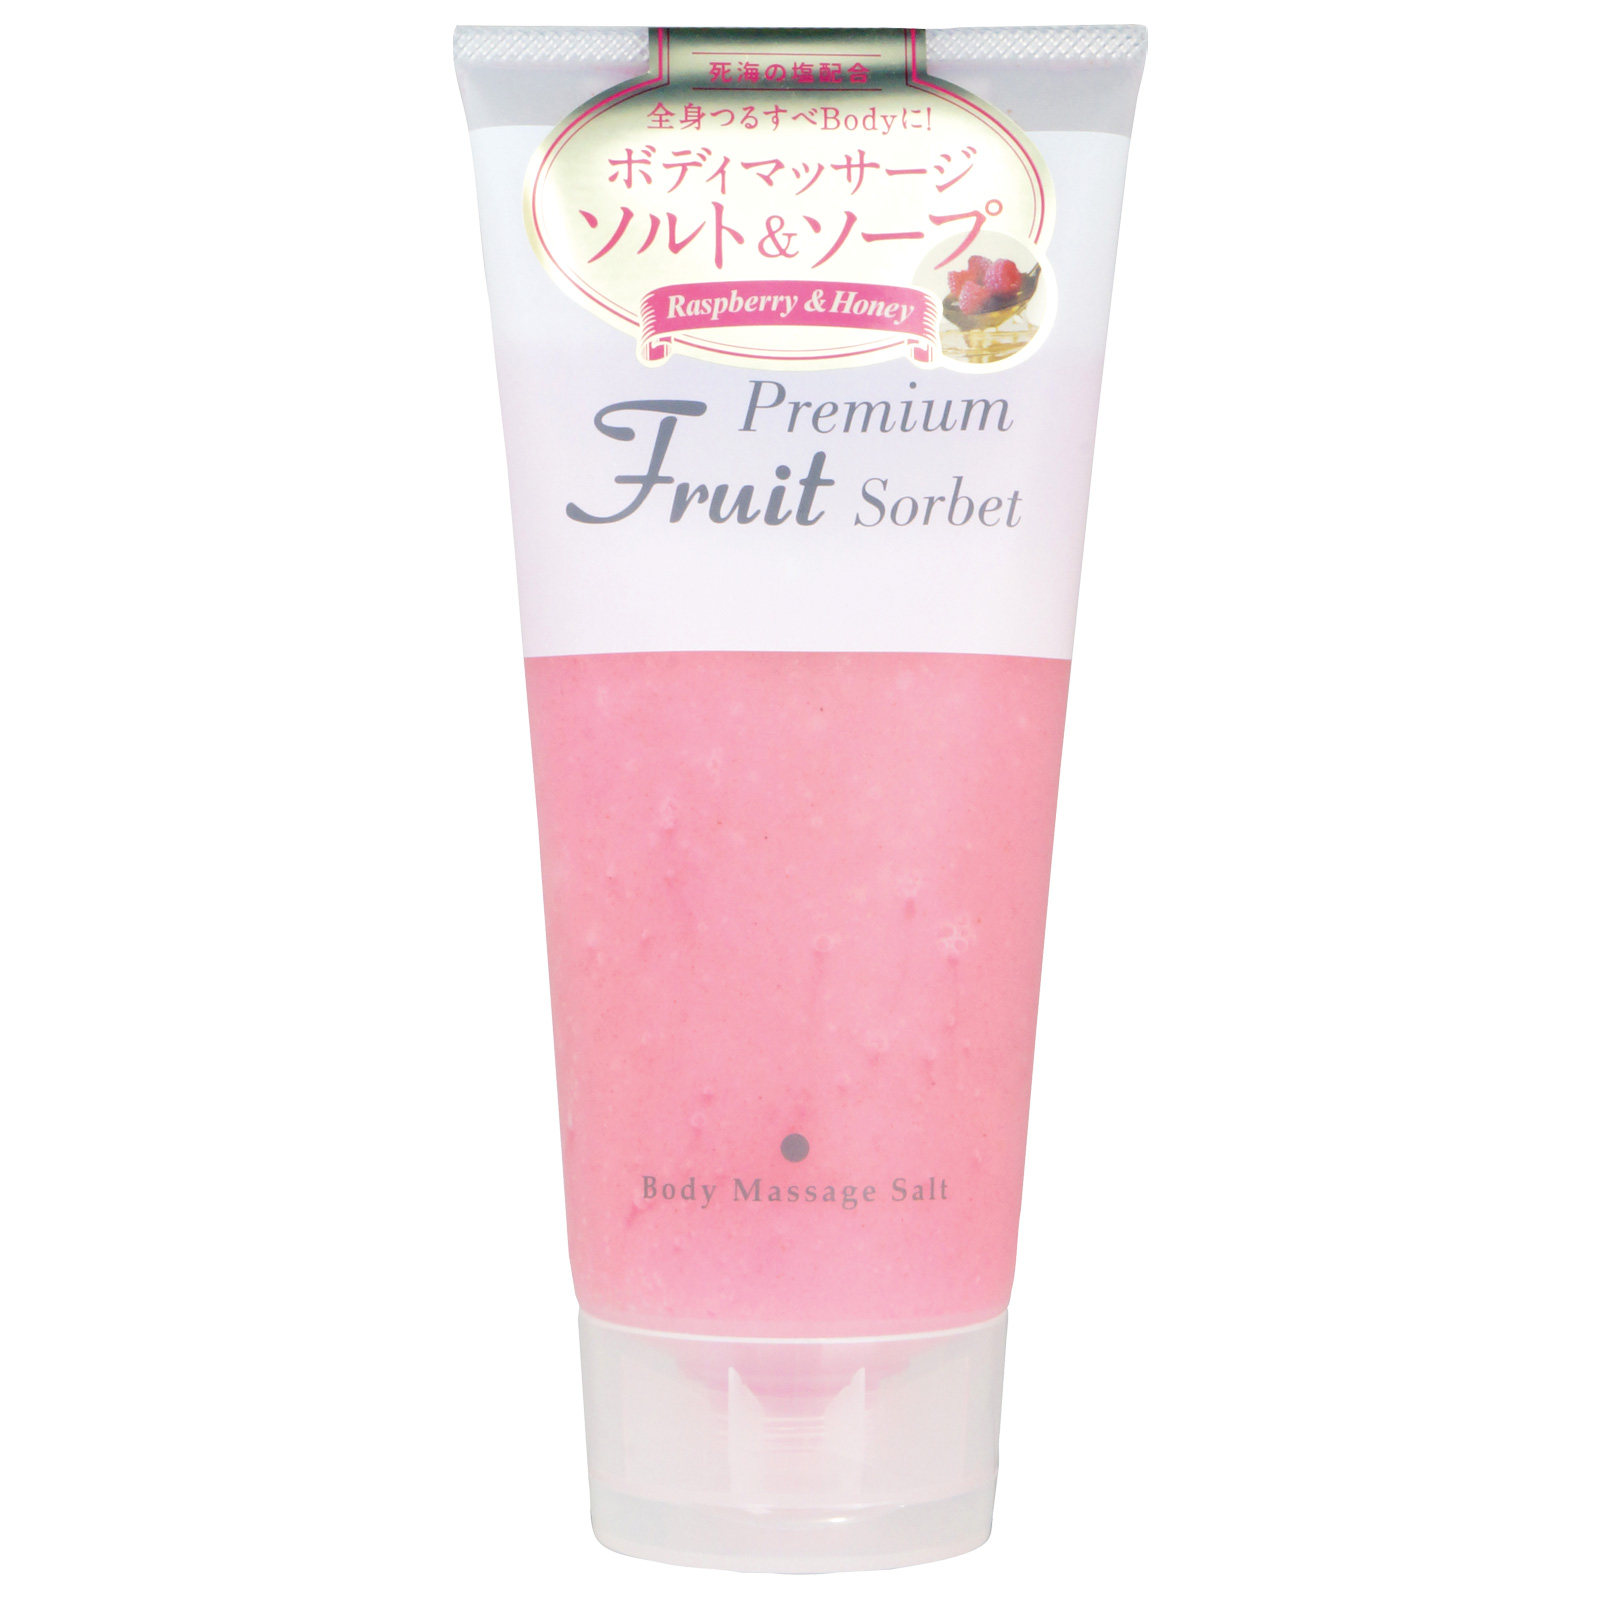 Cosmepro Premium Fruit Sorbet Body Massage Salt Raspberry&Honey. Премиальный фруктовый скраб-сорбет для тела на основе соли «Малина и мёд» Космепро, 500 г